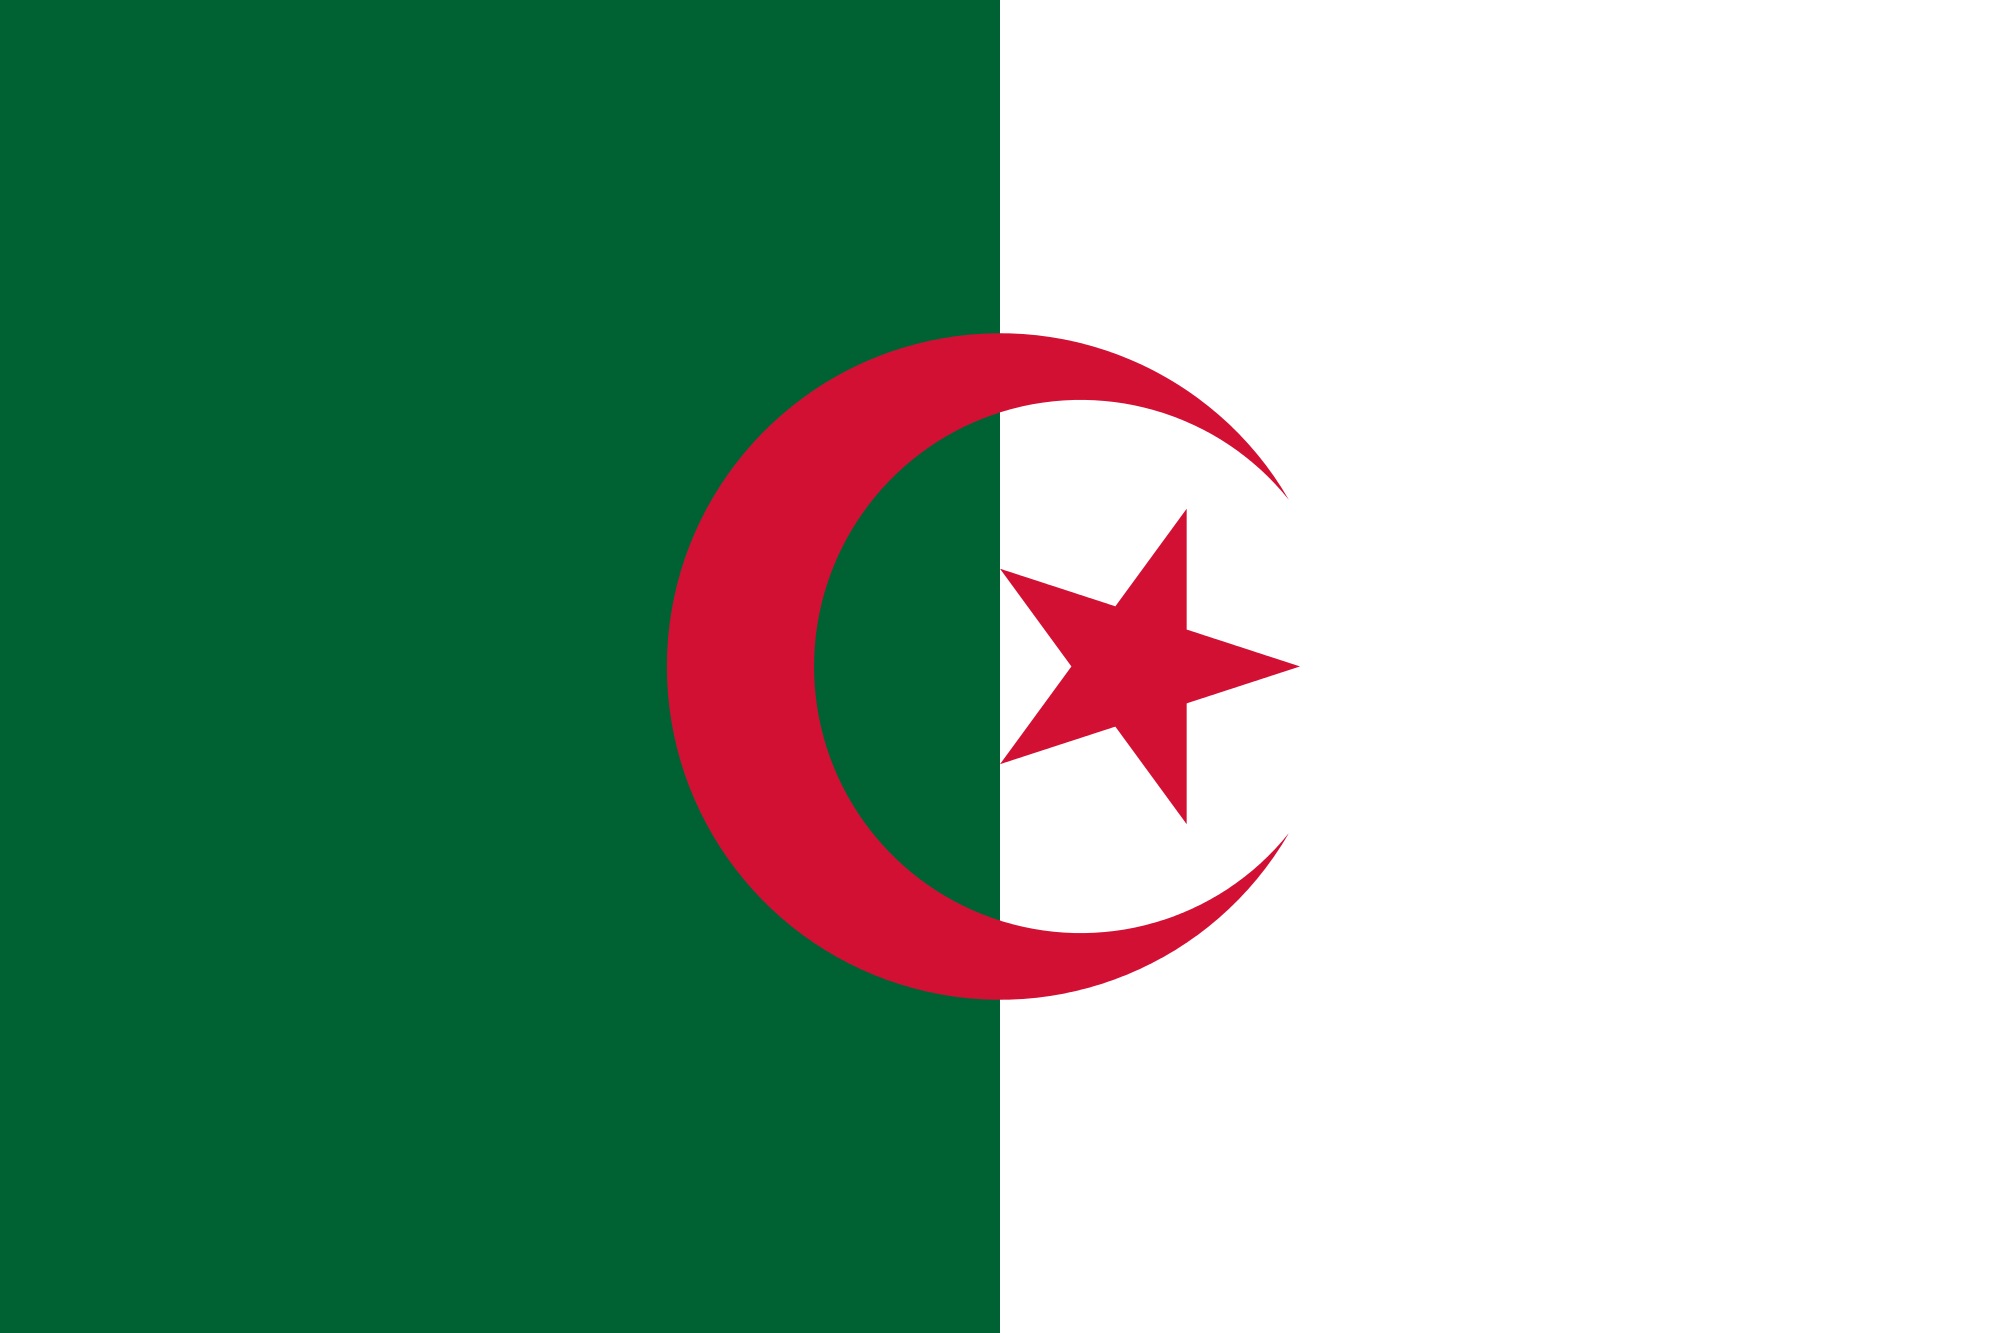 نتيجة بحث الصور عن الجزائر